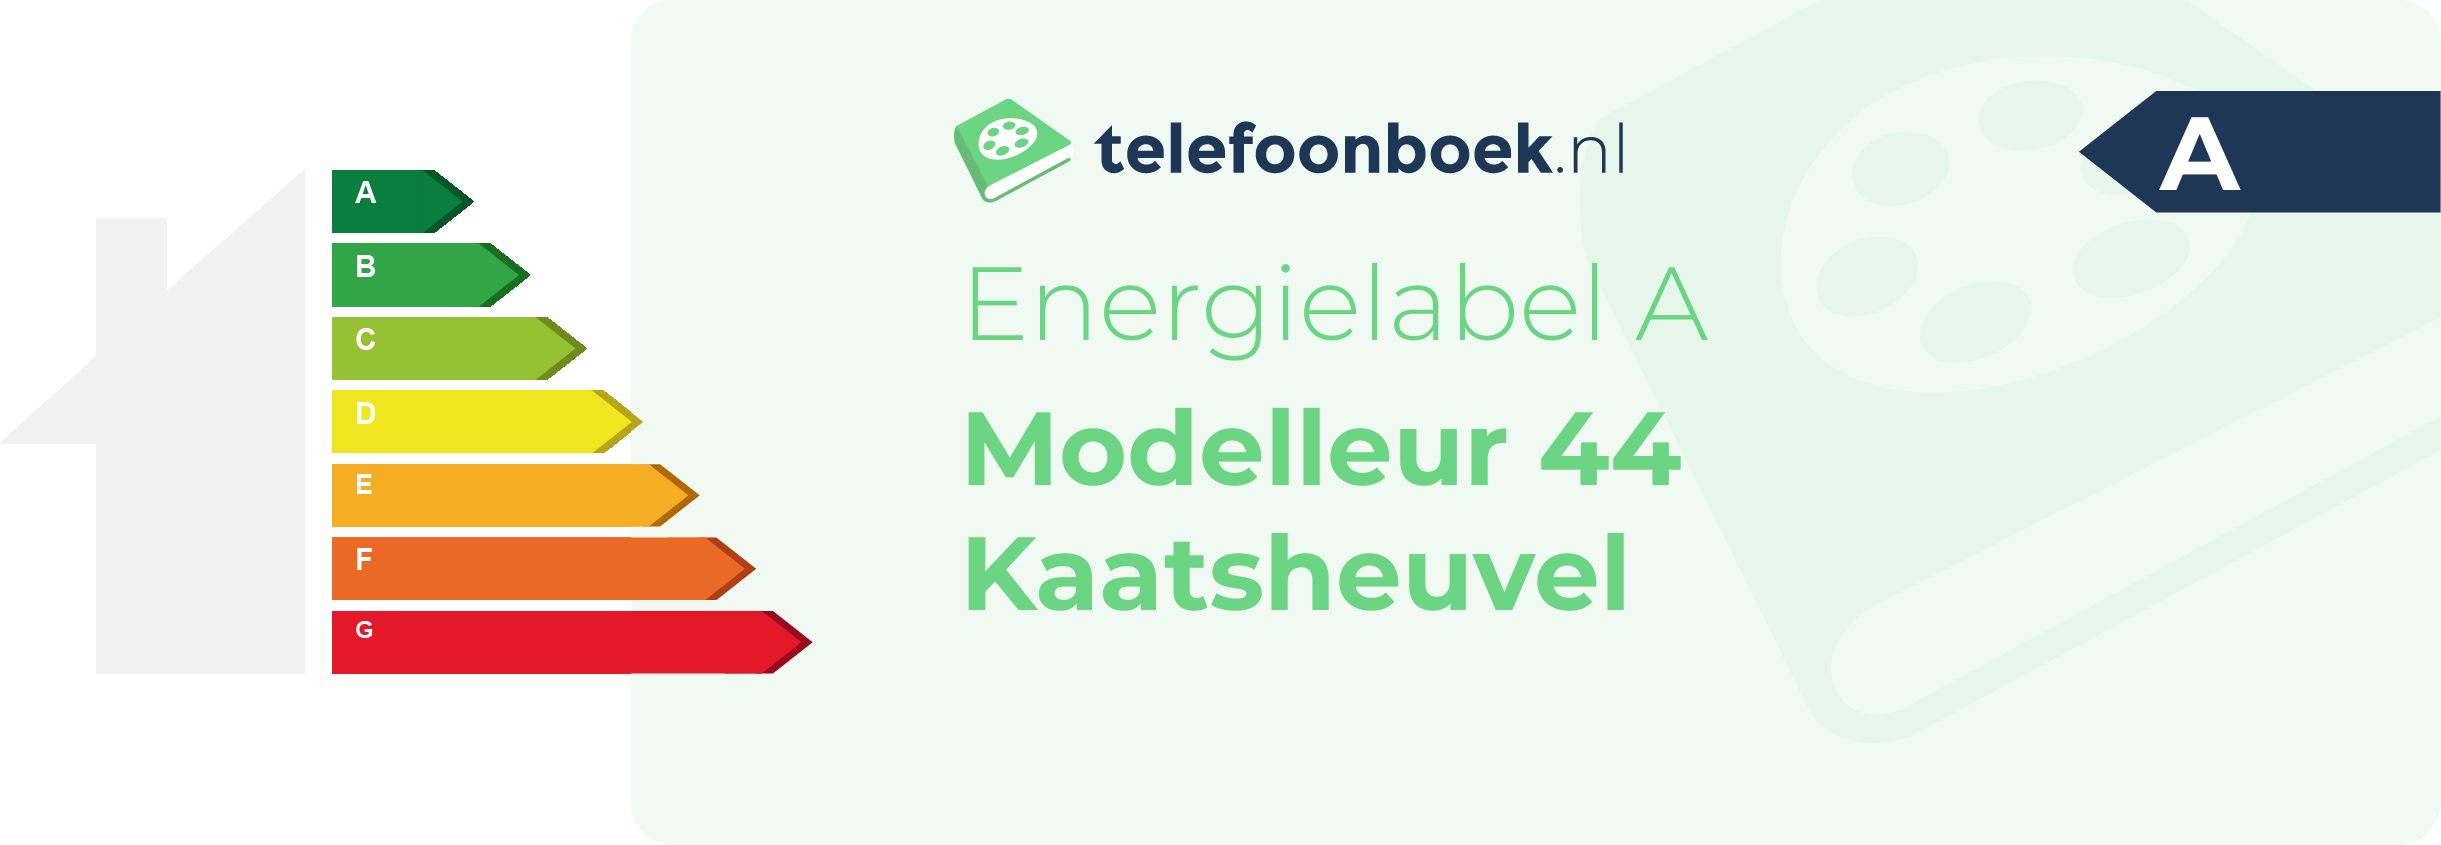 Energielabel Modelleur 44 Kaatsheuvel